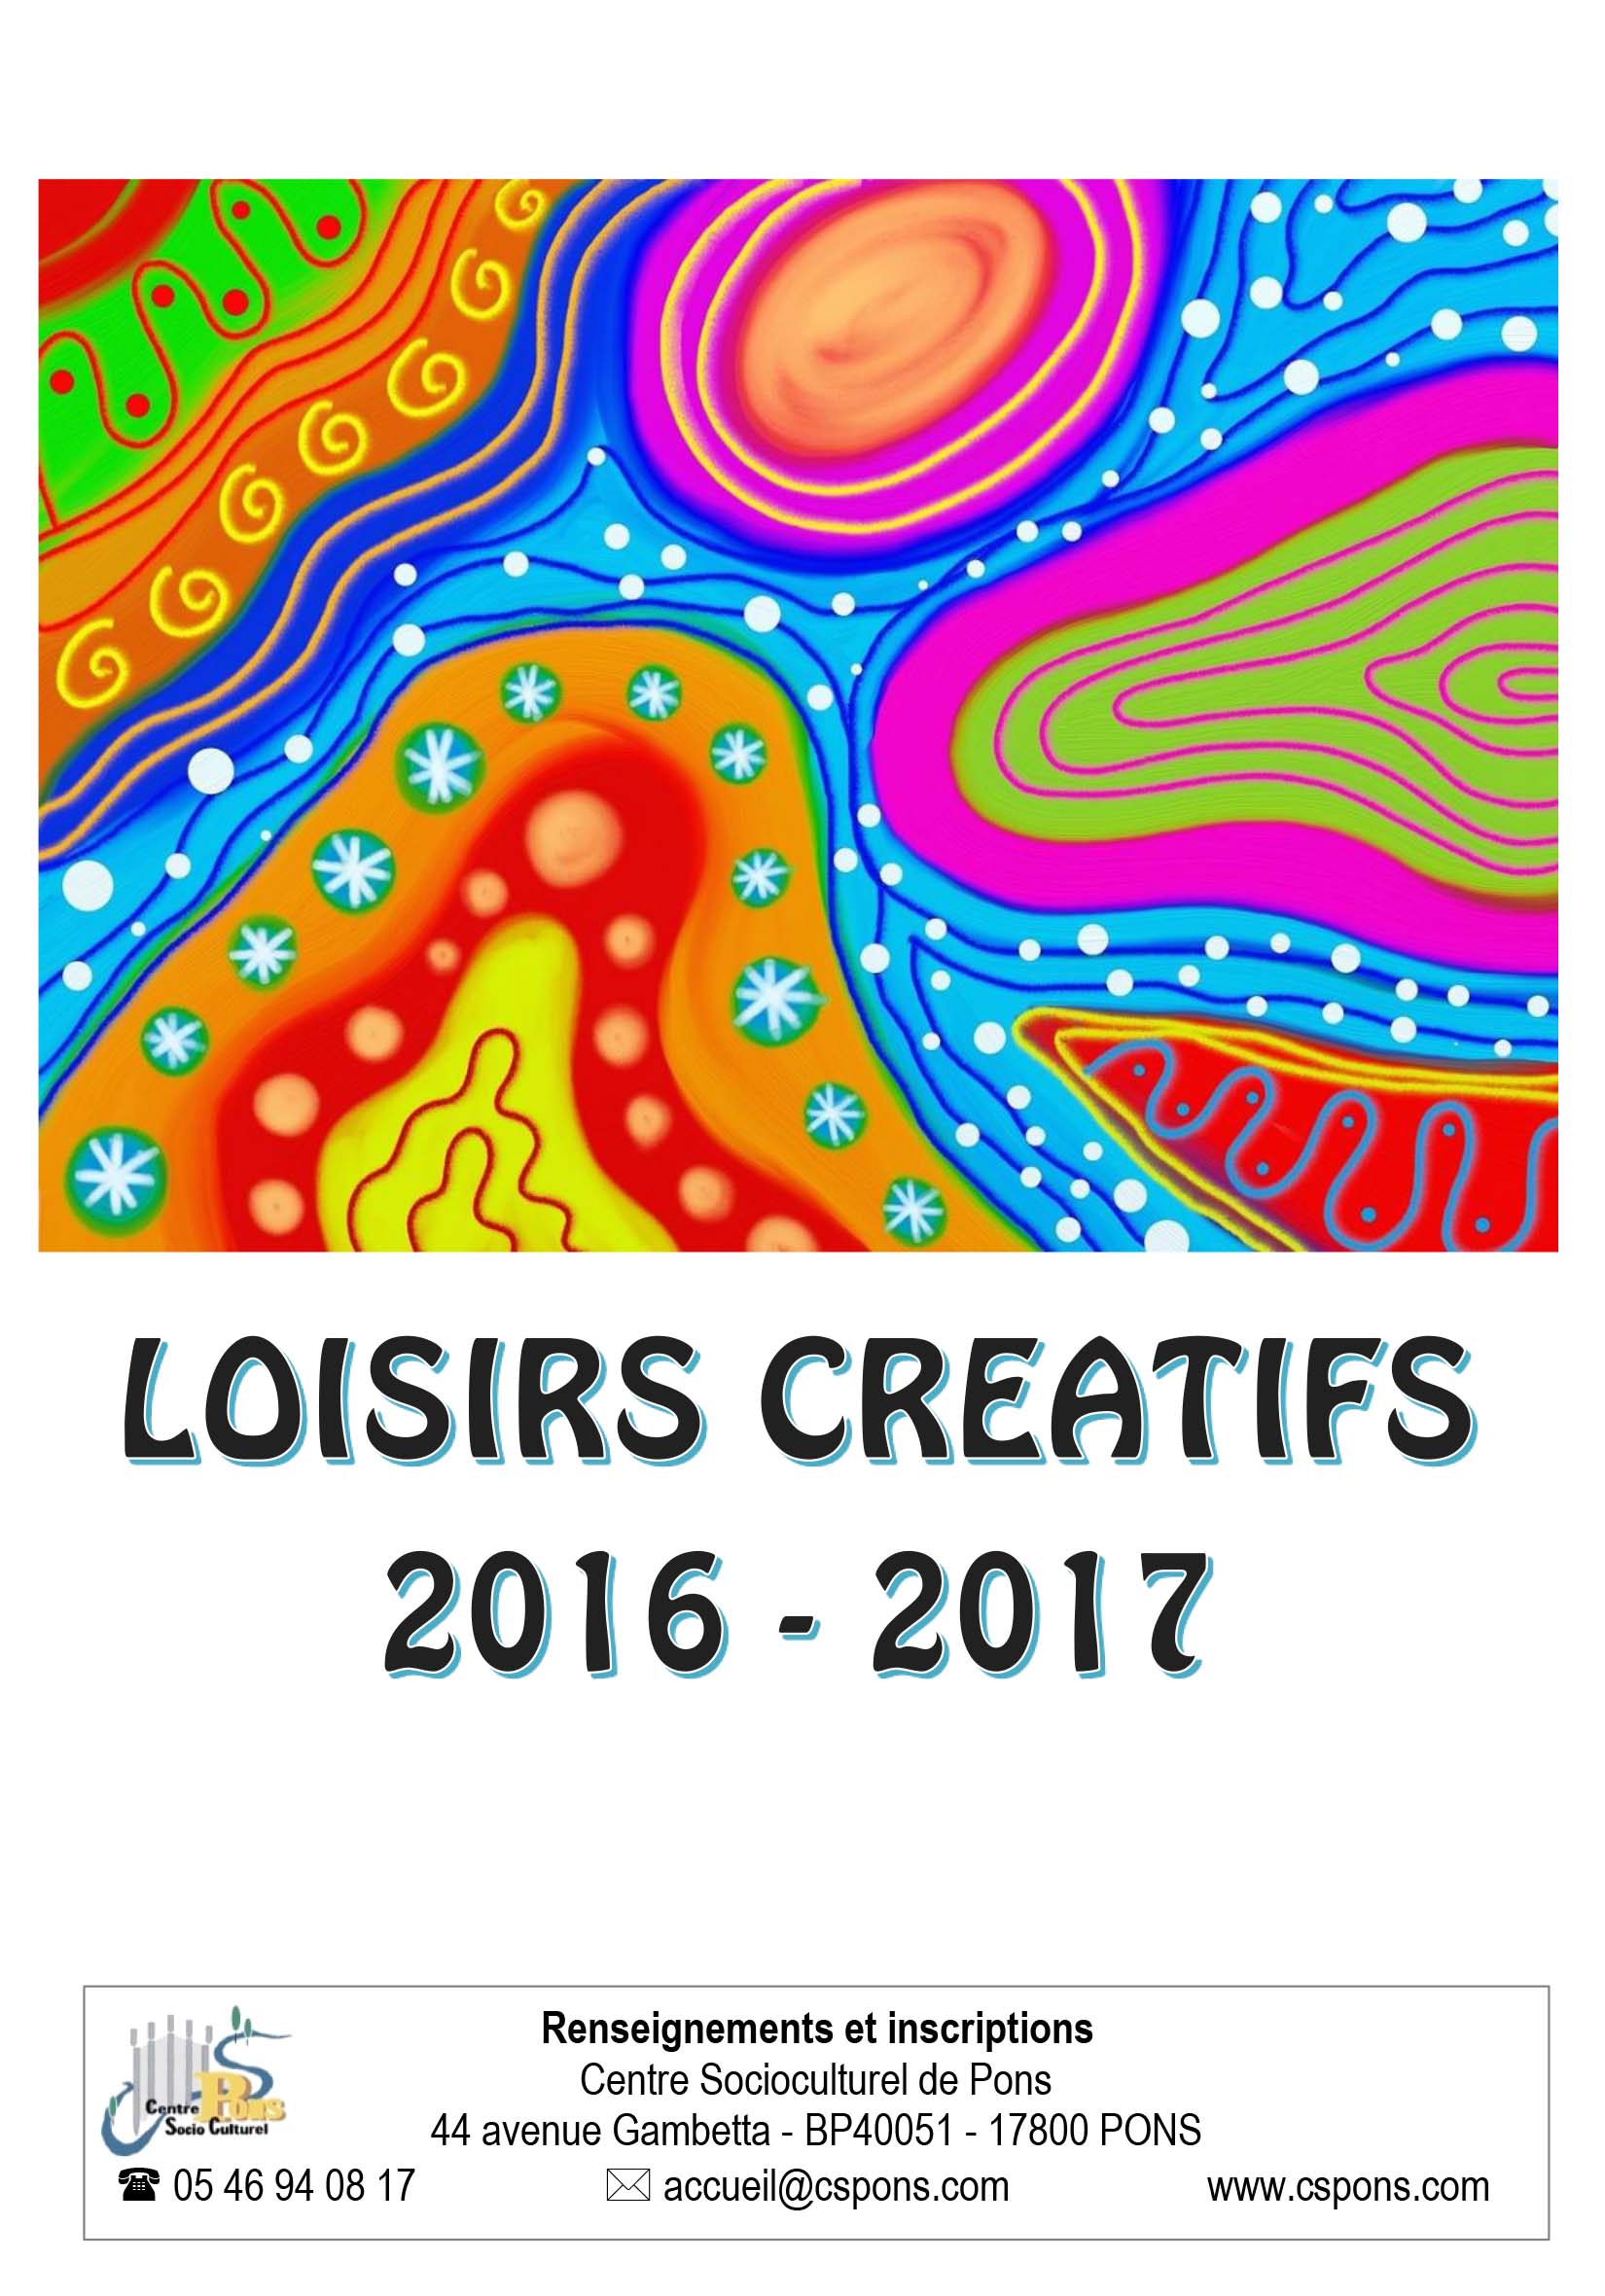 LOISIRS CREATIFS